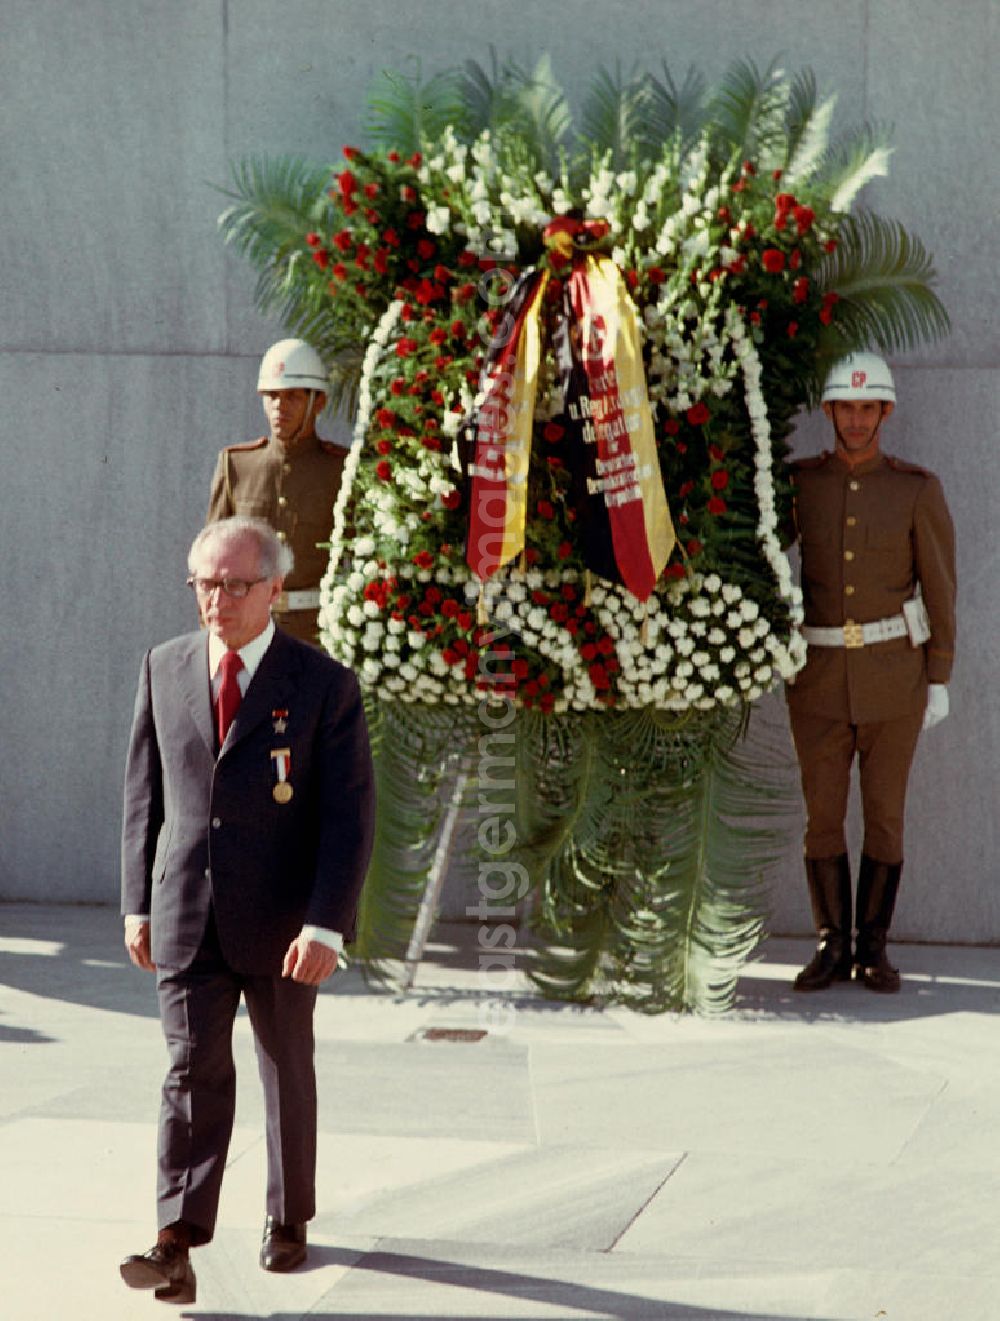 GDR photo archive: Havanna - Kranzniederlegung des Staats- und Parteivorsitzenden der DDR, Erich Honecker, auf dem Plaza de la Revolución (Platz der Revolution) mit dem José-Martí-Denkmal in Havanna. Honecker stattete vom 2